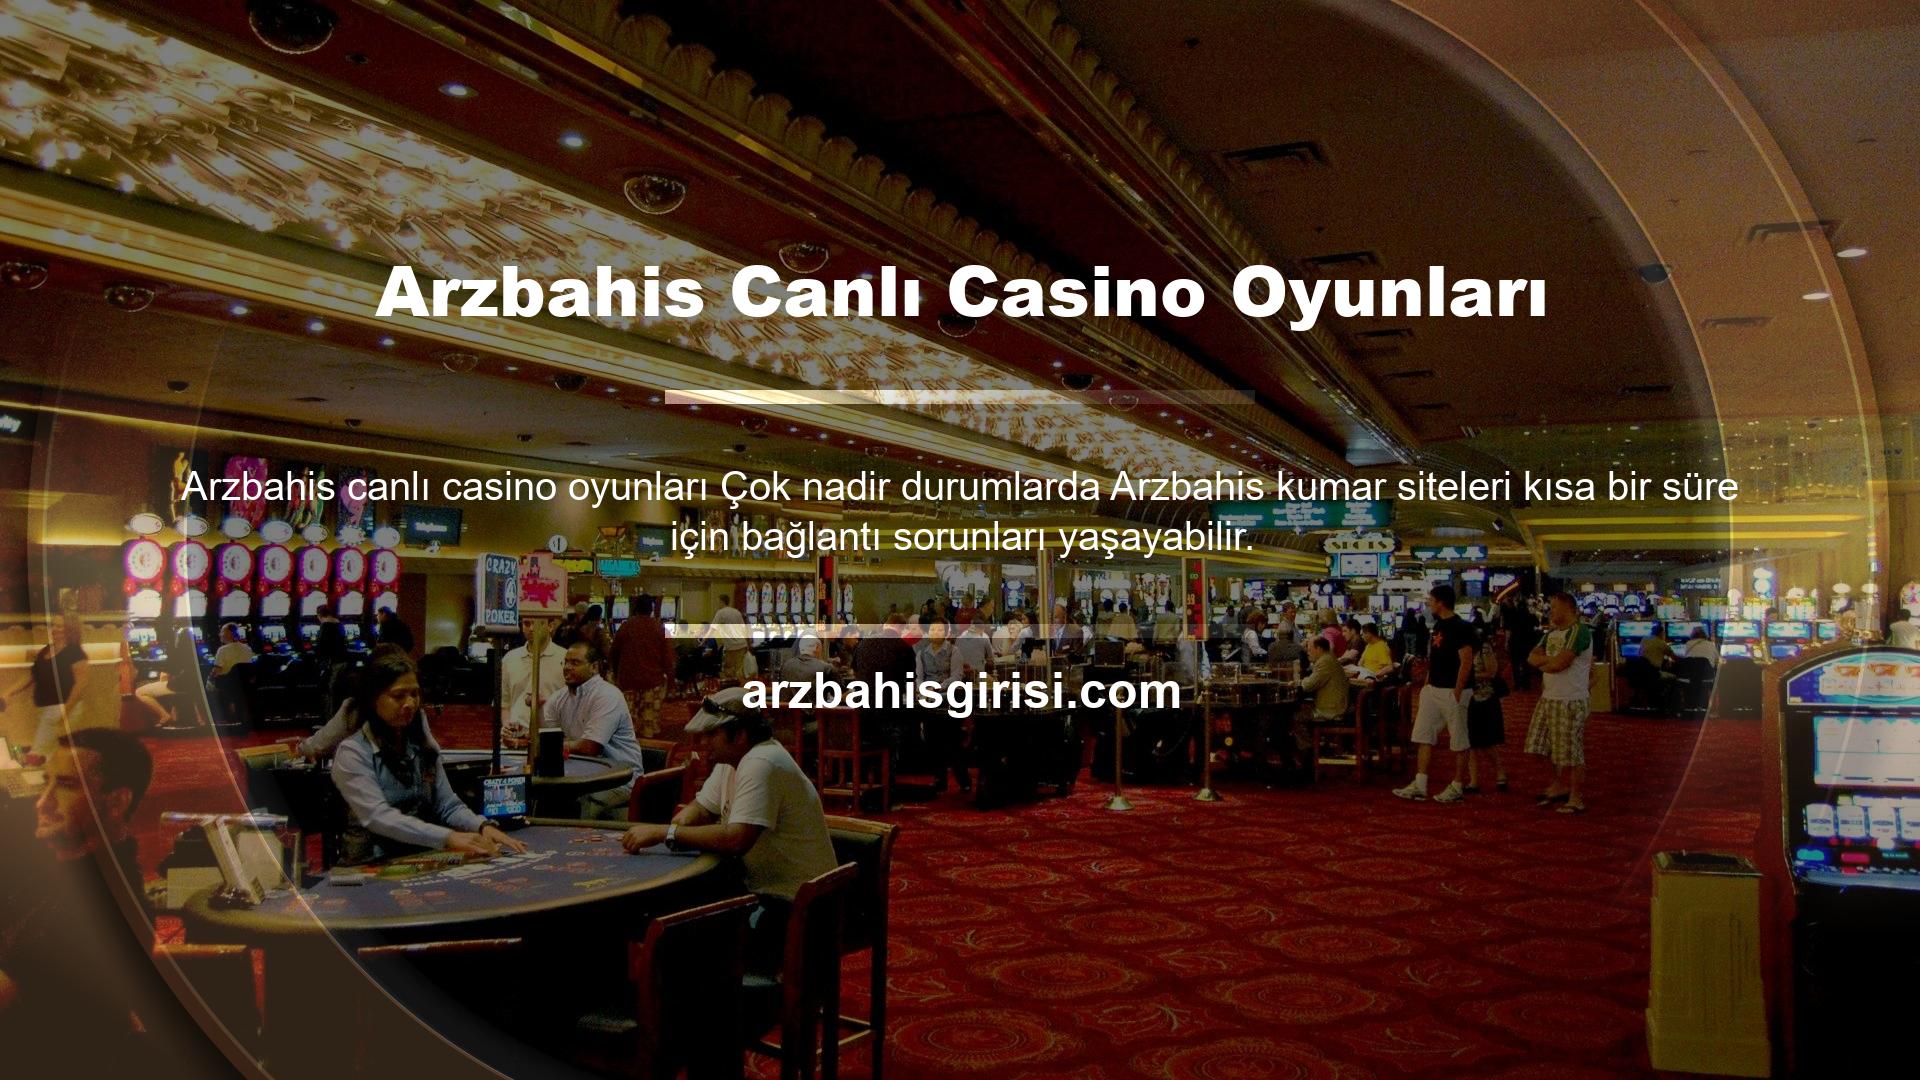 Arzbahis giriş sorunu BTK bloke edildikten sonra Arzbahis canlı casino oyunlarına giriş yaptı, bu durumda kumarbazların kurbanı olmamak için yeni bir adres verildi